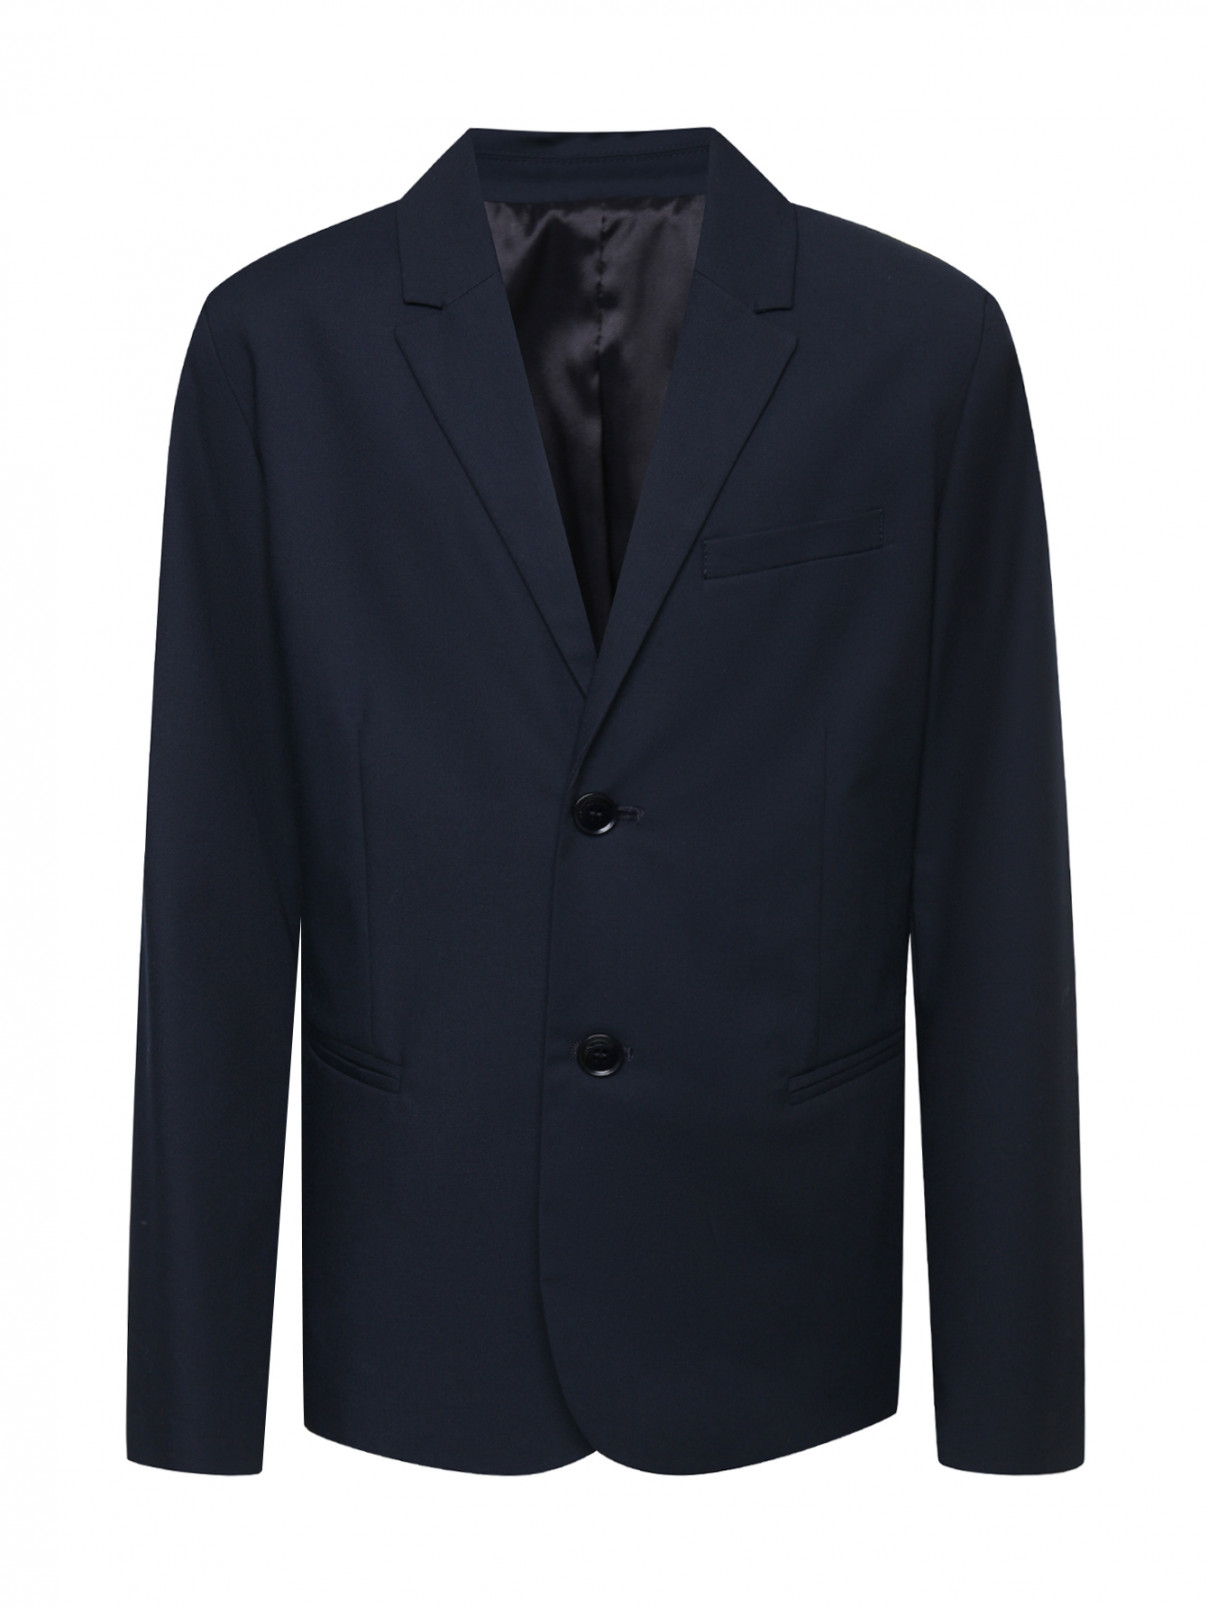 Однотонный пиджак с карманами Emporio Armani  –  Общий вид  – Цвет:  Синий